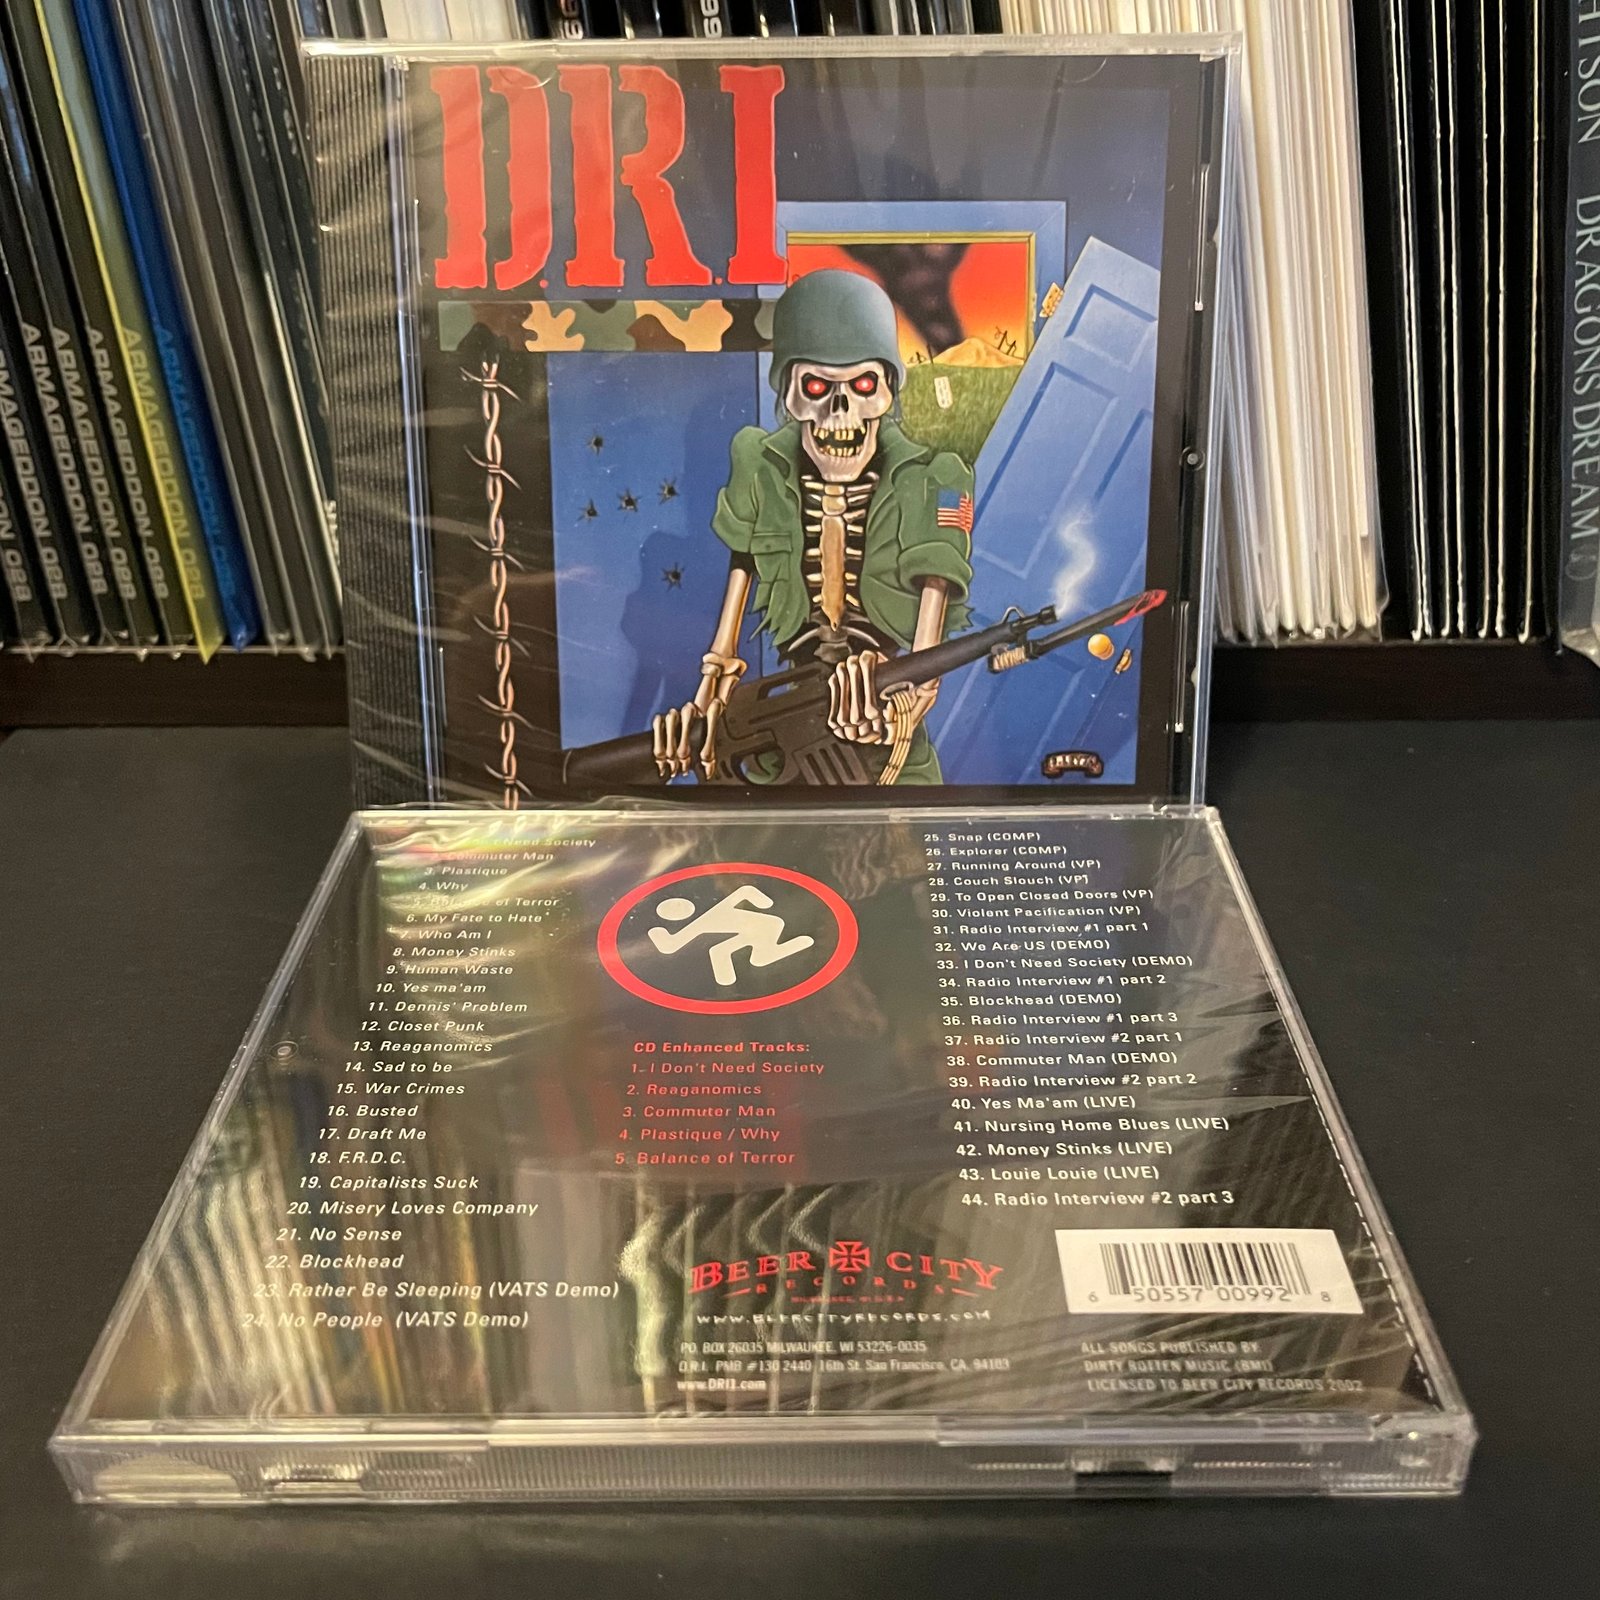 ＊新品CD D.R.I./THE DIRTY ROTTEN CD 2005年作品編集盤 88年1st EP+α 米国ハードコアスラッシュ SPAZZ SIEGE DROPDEAD ACCUSED HIRAX